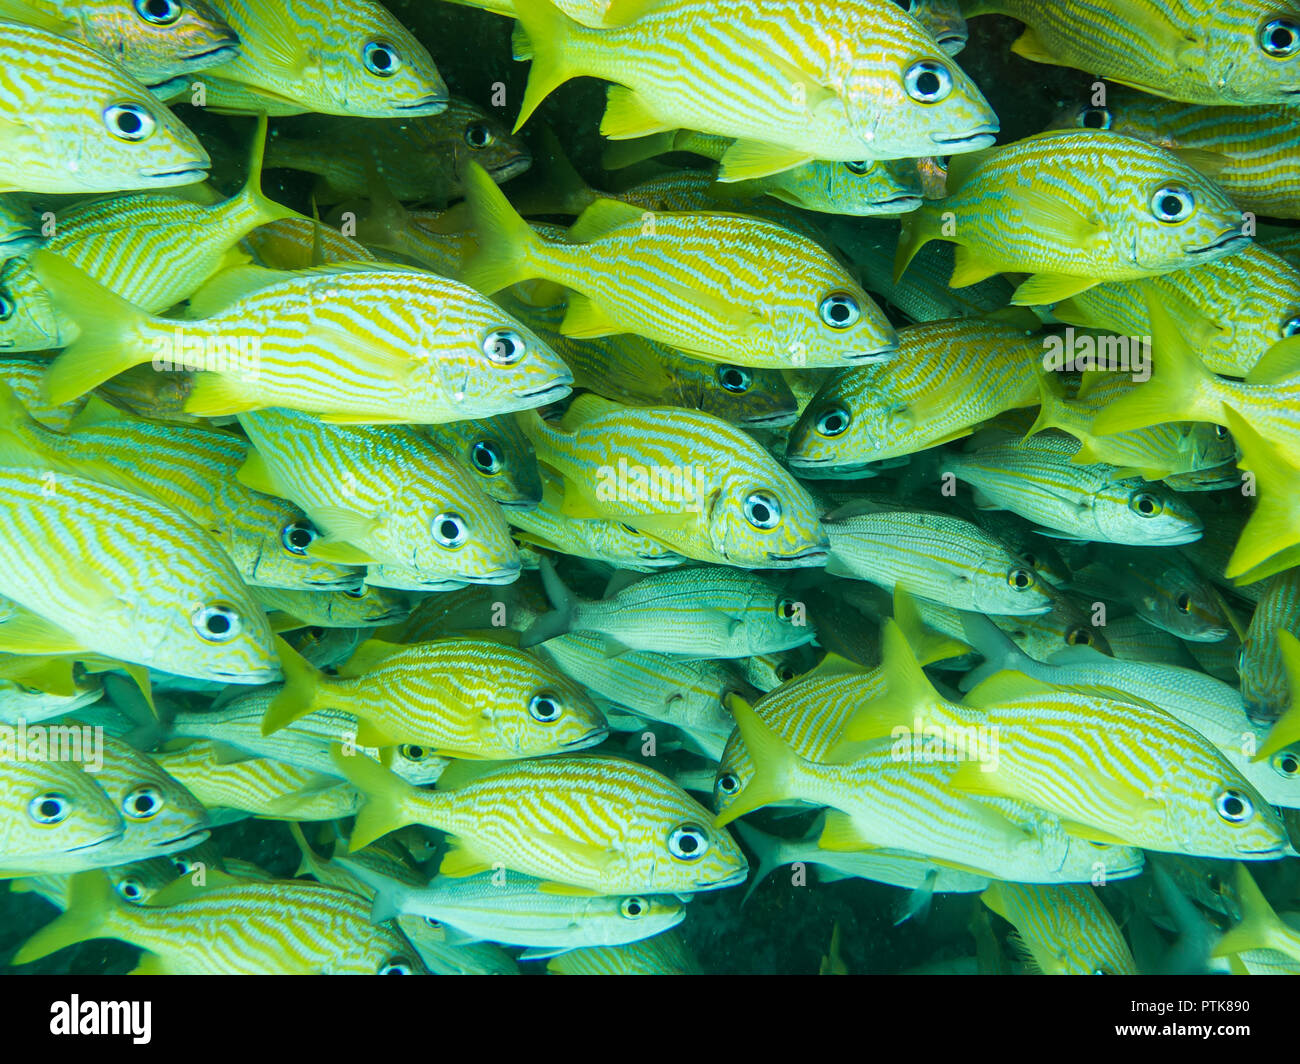 Banc de poissons jaunes dans les eaux de jouer del Carmen au Mexique Banque D'Images